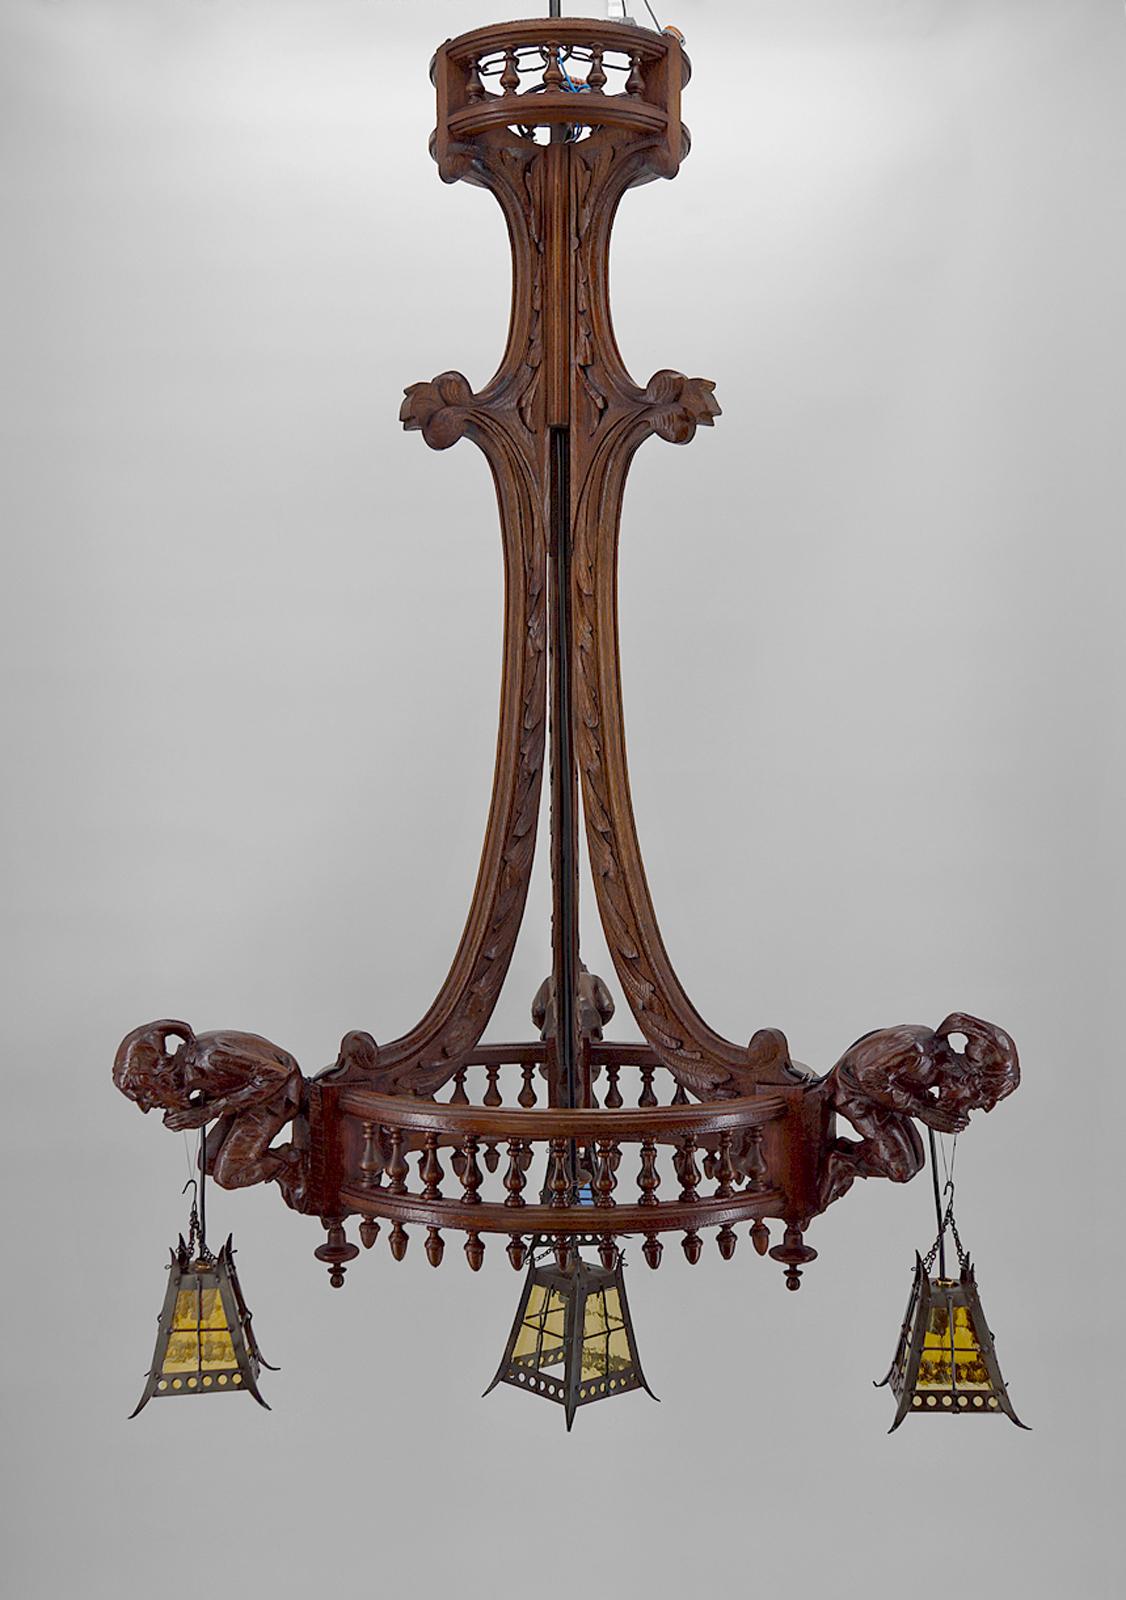 Imposant lustre / suspension / pendentif en chêne, composé de 3 branches avec à l'extrémité de chacune un bouffon tenant une lanterne. Les branches sont reliées par un balustre en bois tourné.
Les bouffons sont sculptés dans du tilleul.
Les